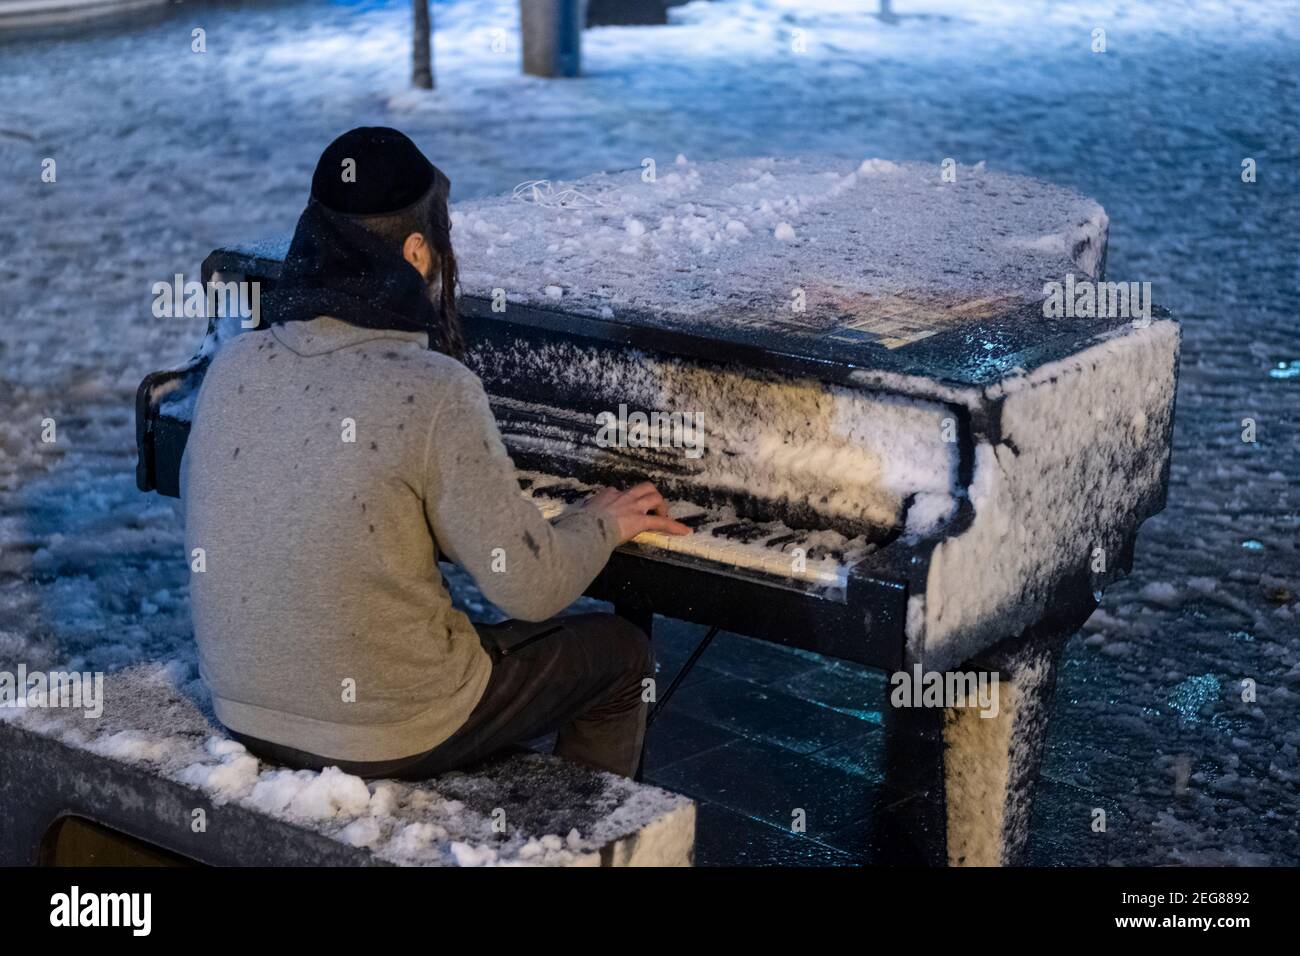 JÉRUSALEM, ISRAËL - 17 FÉVRIER : un jeune juif orthodoxe joue le piano sur  la place Sion, pendant la chute de neige le 17 février 2020 à Jérusalem, en  Israël. Jérusalem a